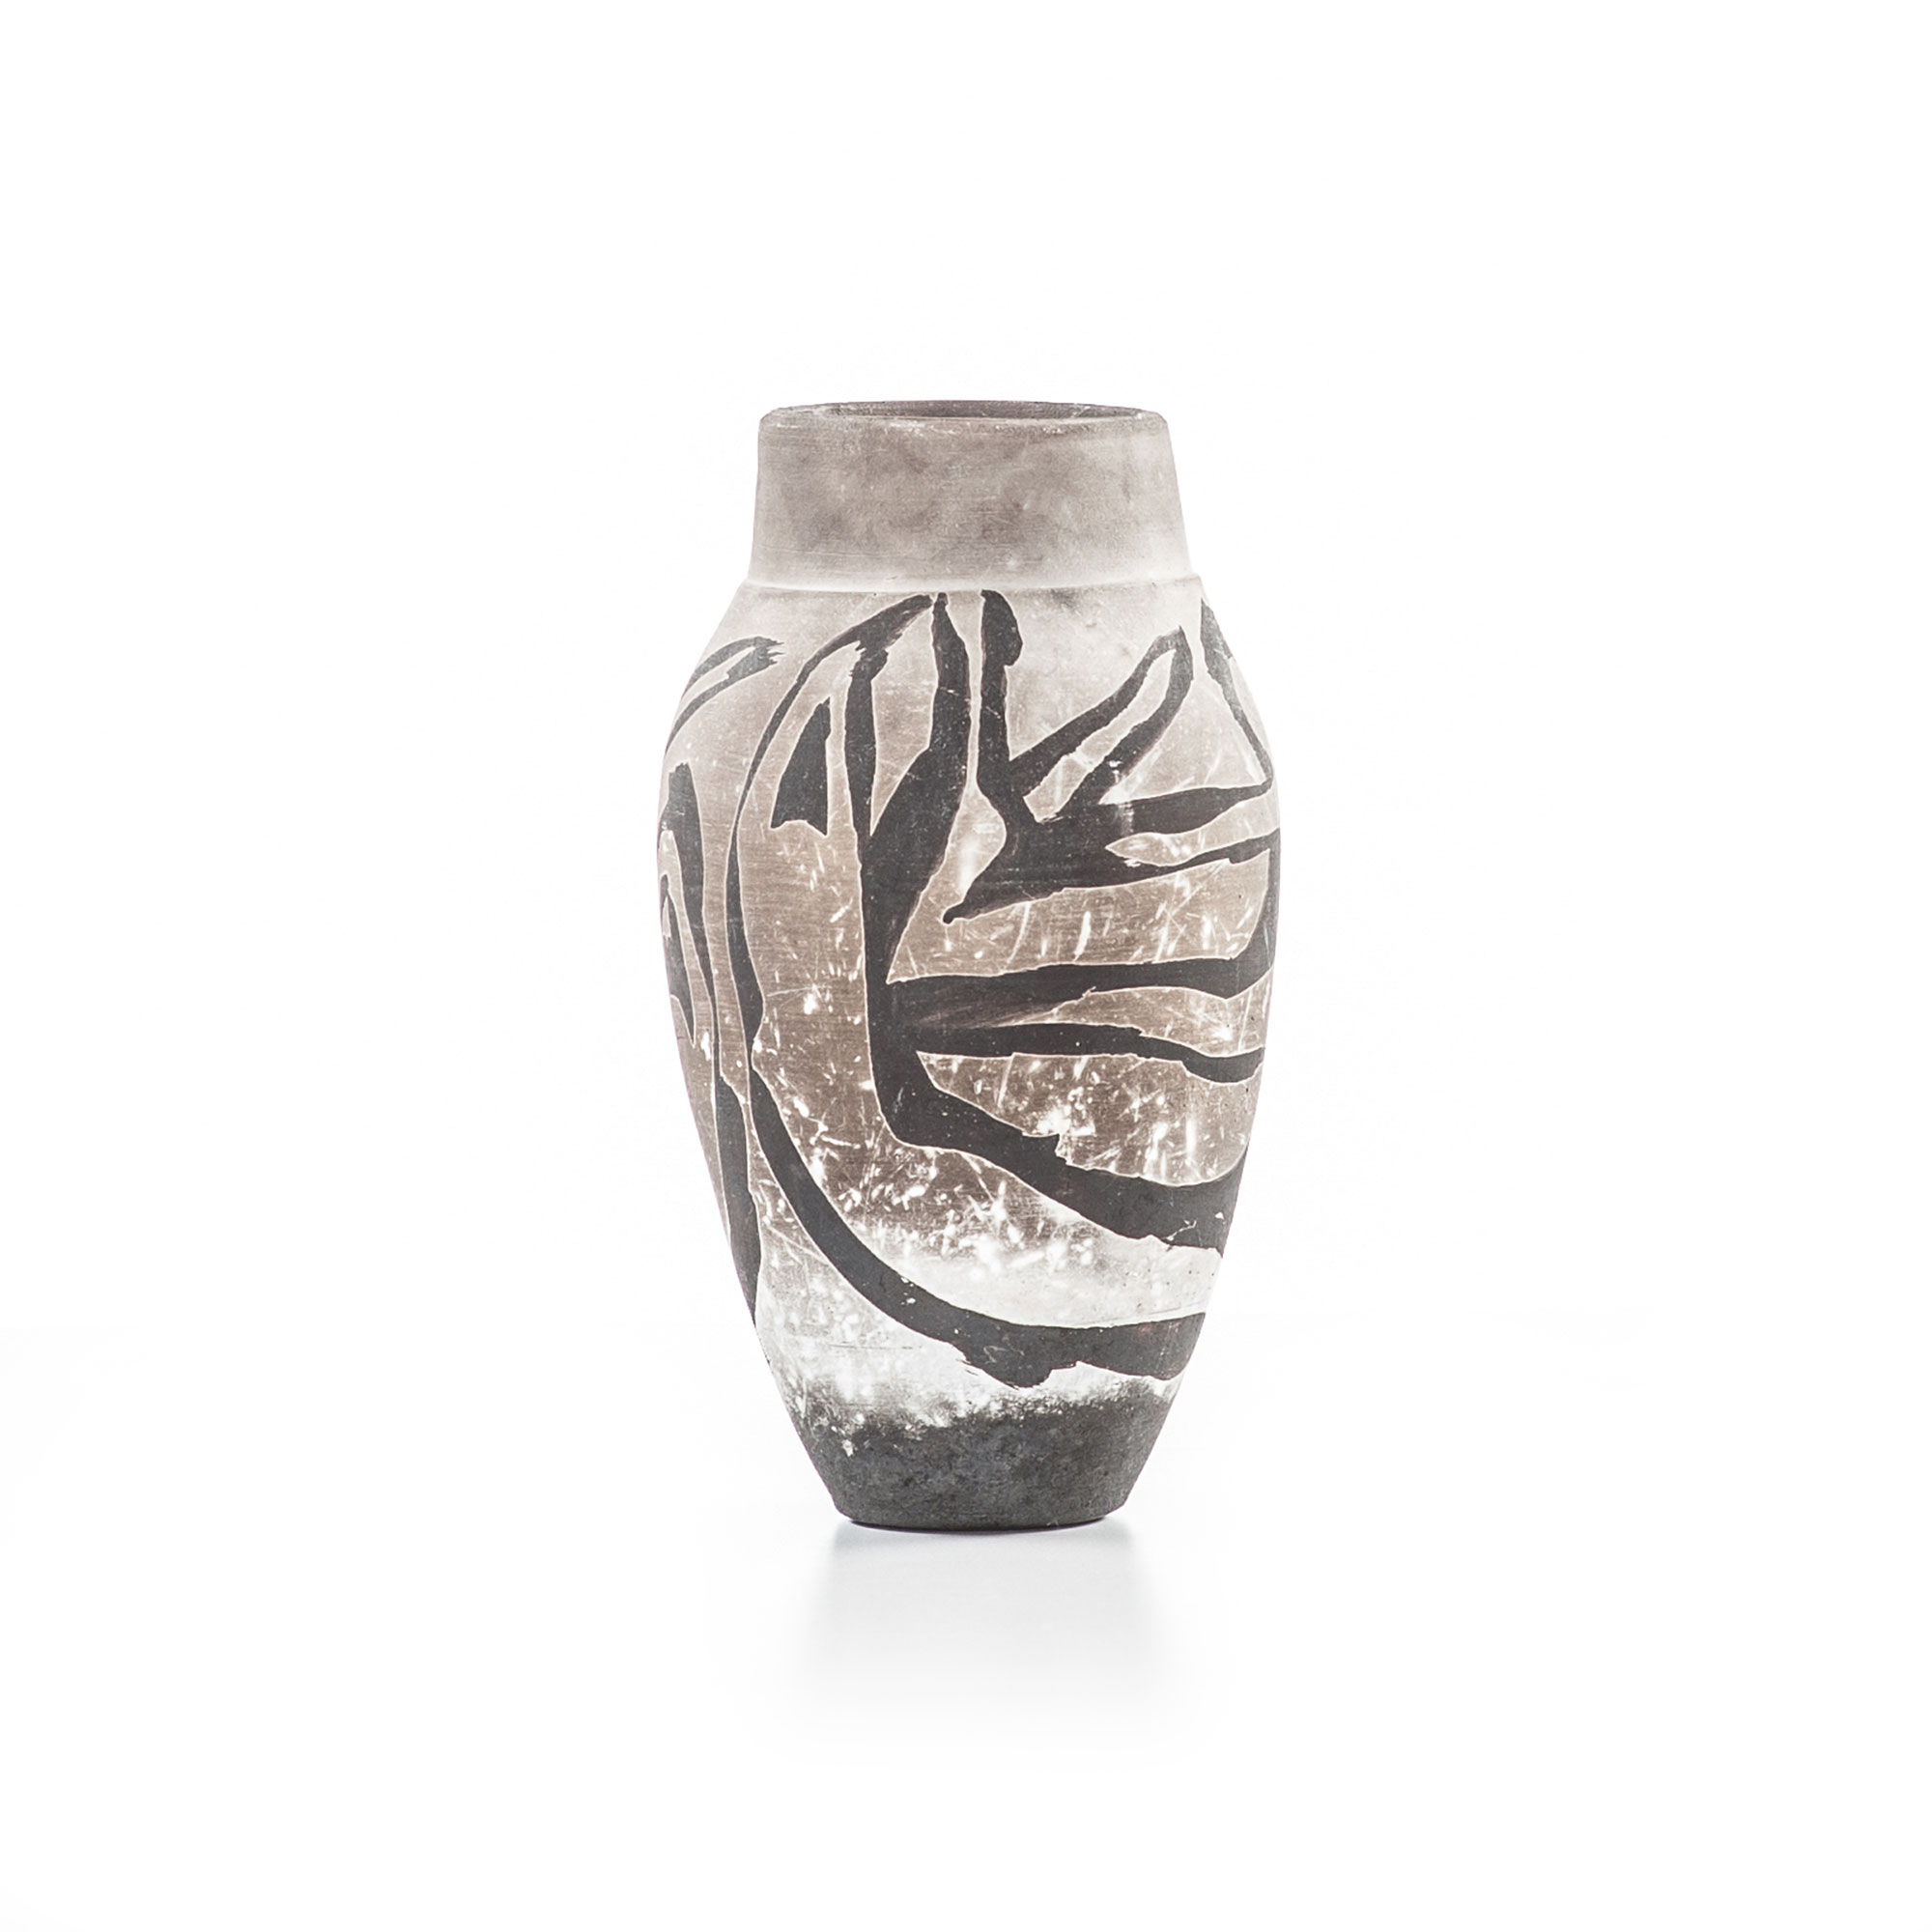 Halo raku vase with figures